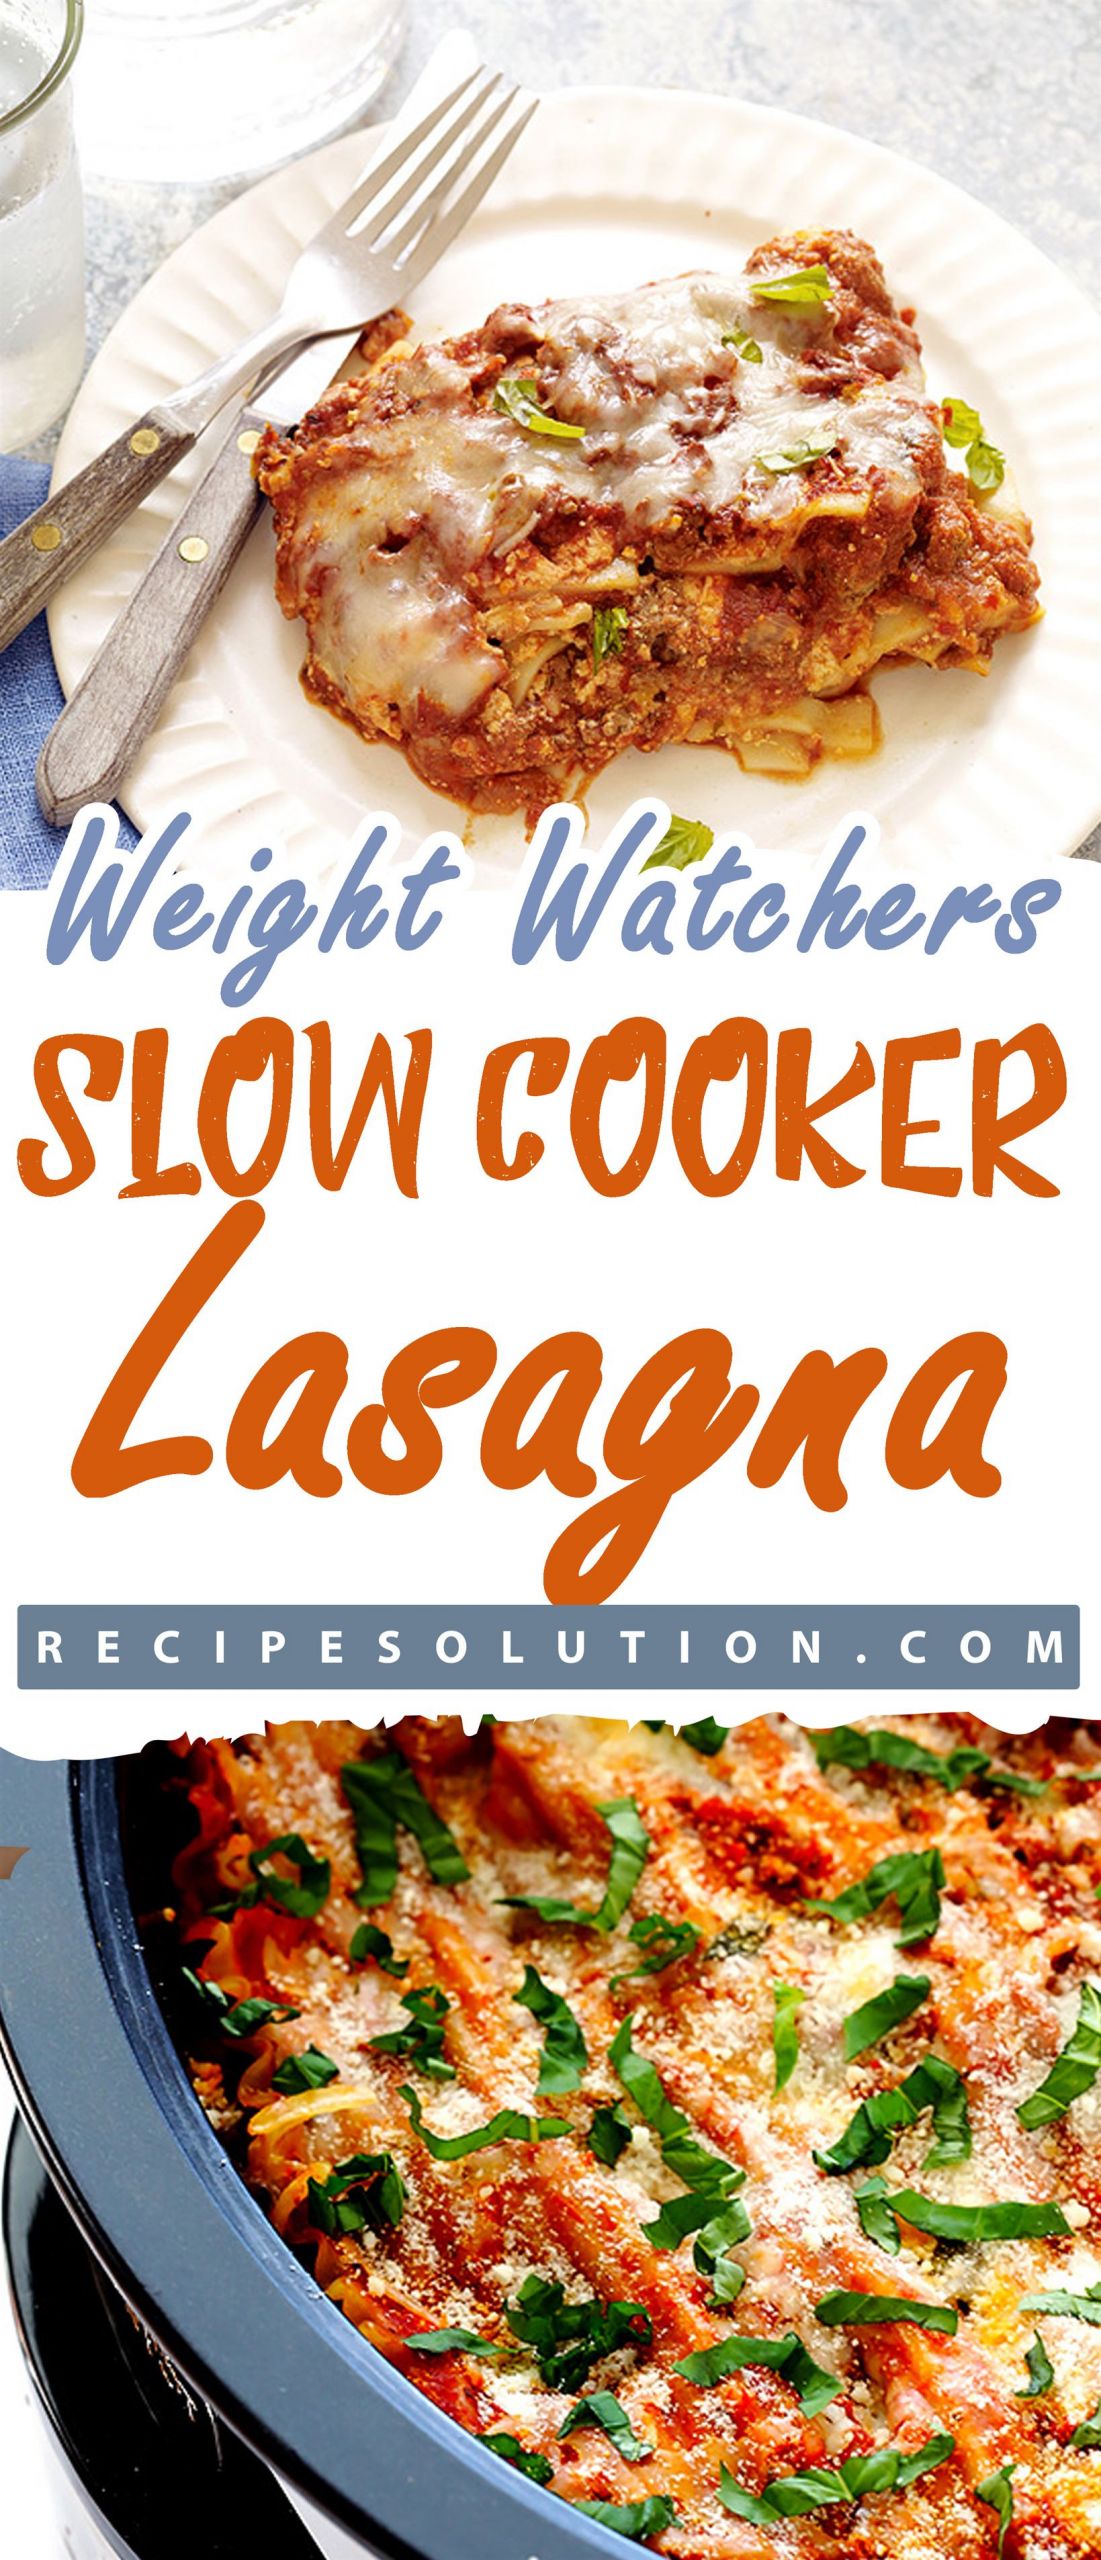 Weight Watchers Slow Cooker Lasagna
 Slow Cooker Lasagna Recipe Solution